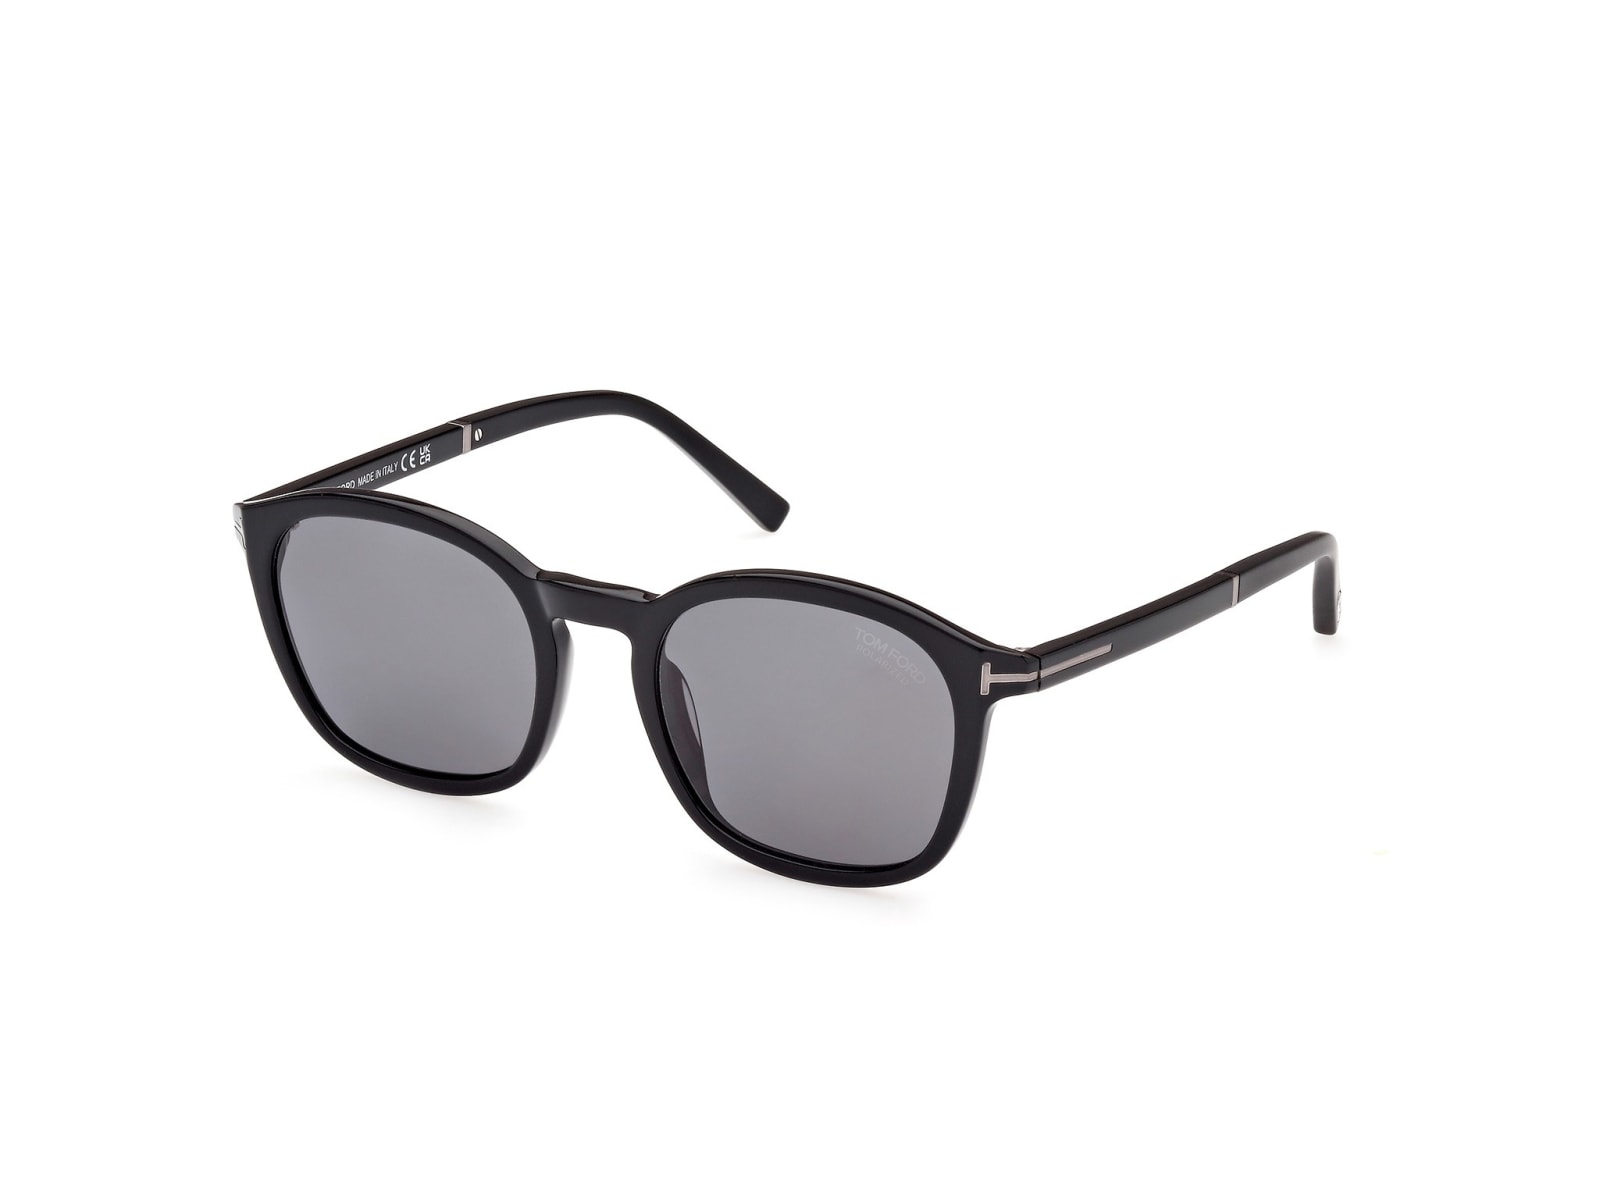 Tom Ford Sunglasses In Nero/nero